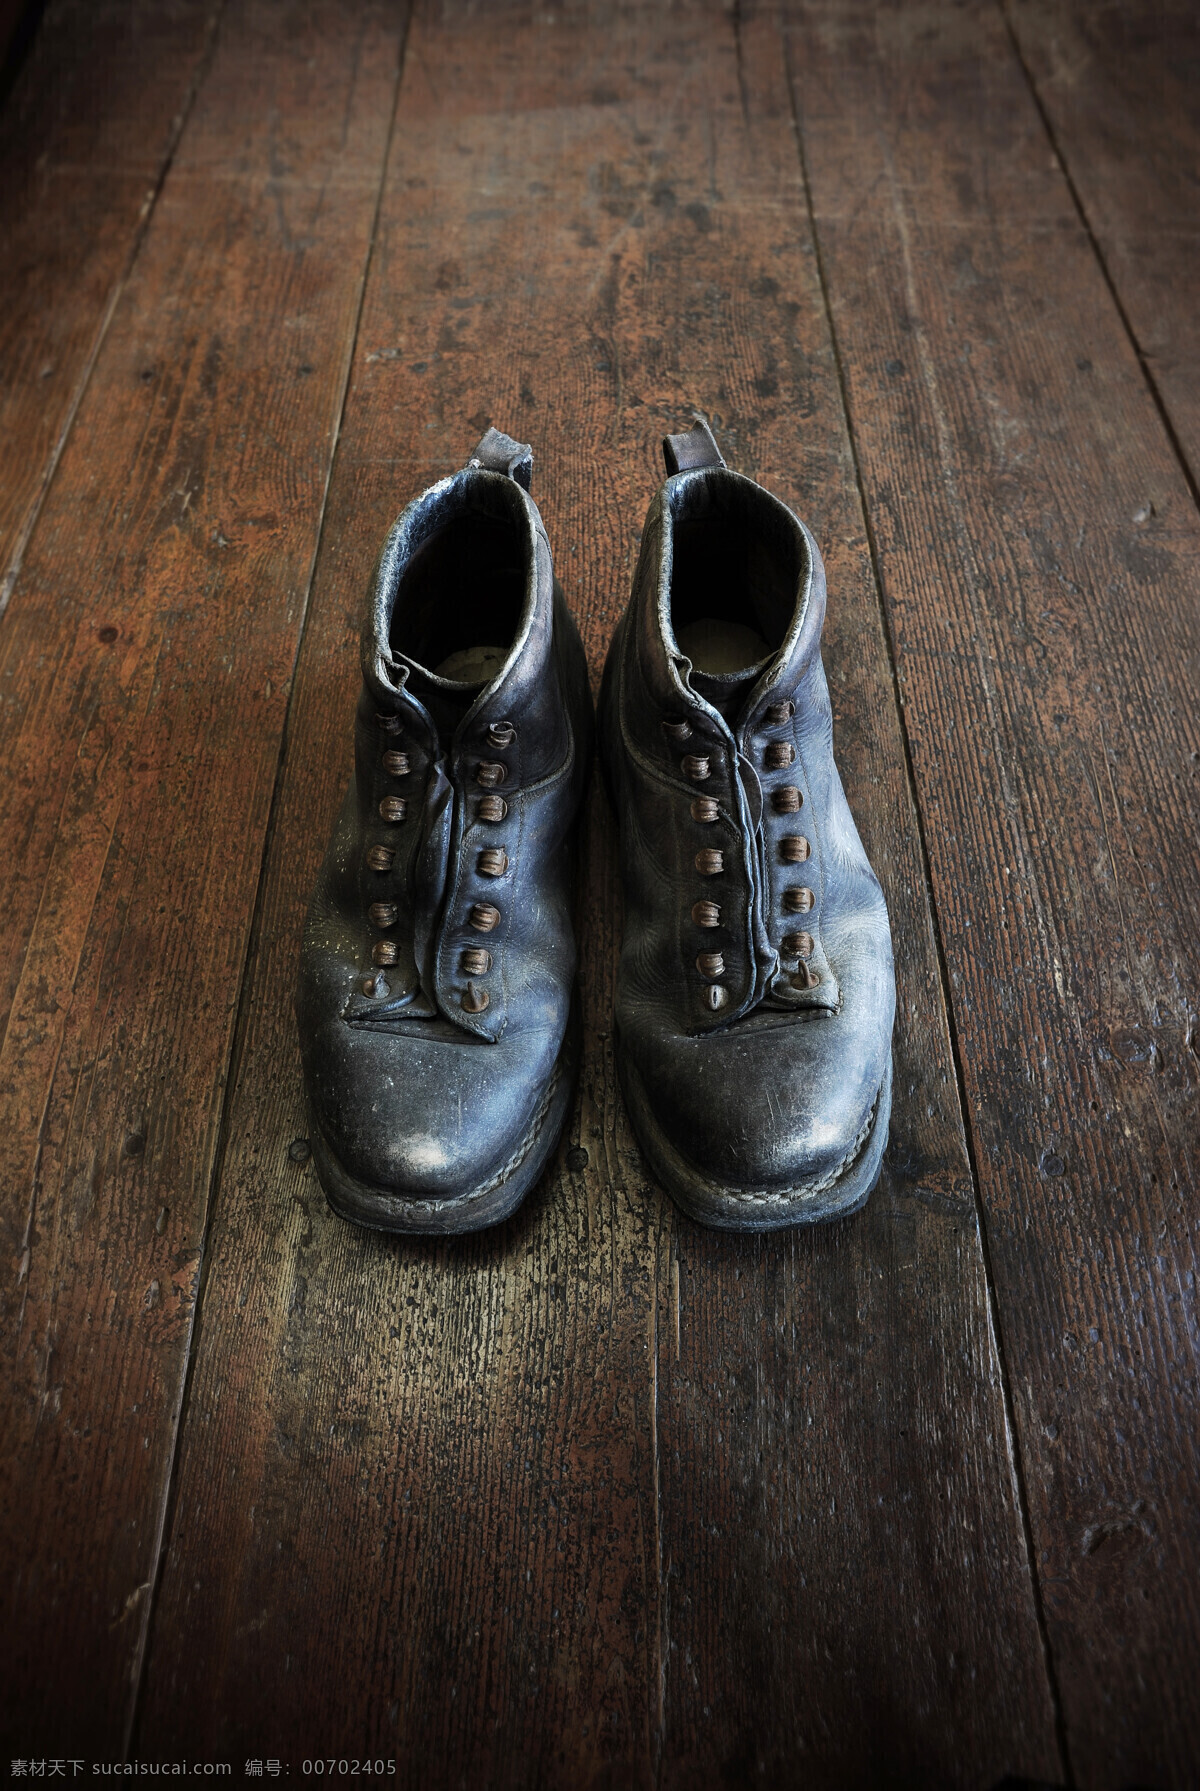 地板 上 双 鞋 破旧地板 皮鞋 一双皮 生活用品 生活百科